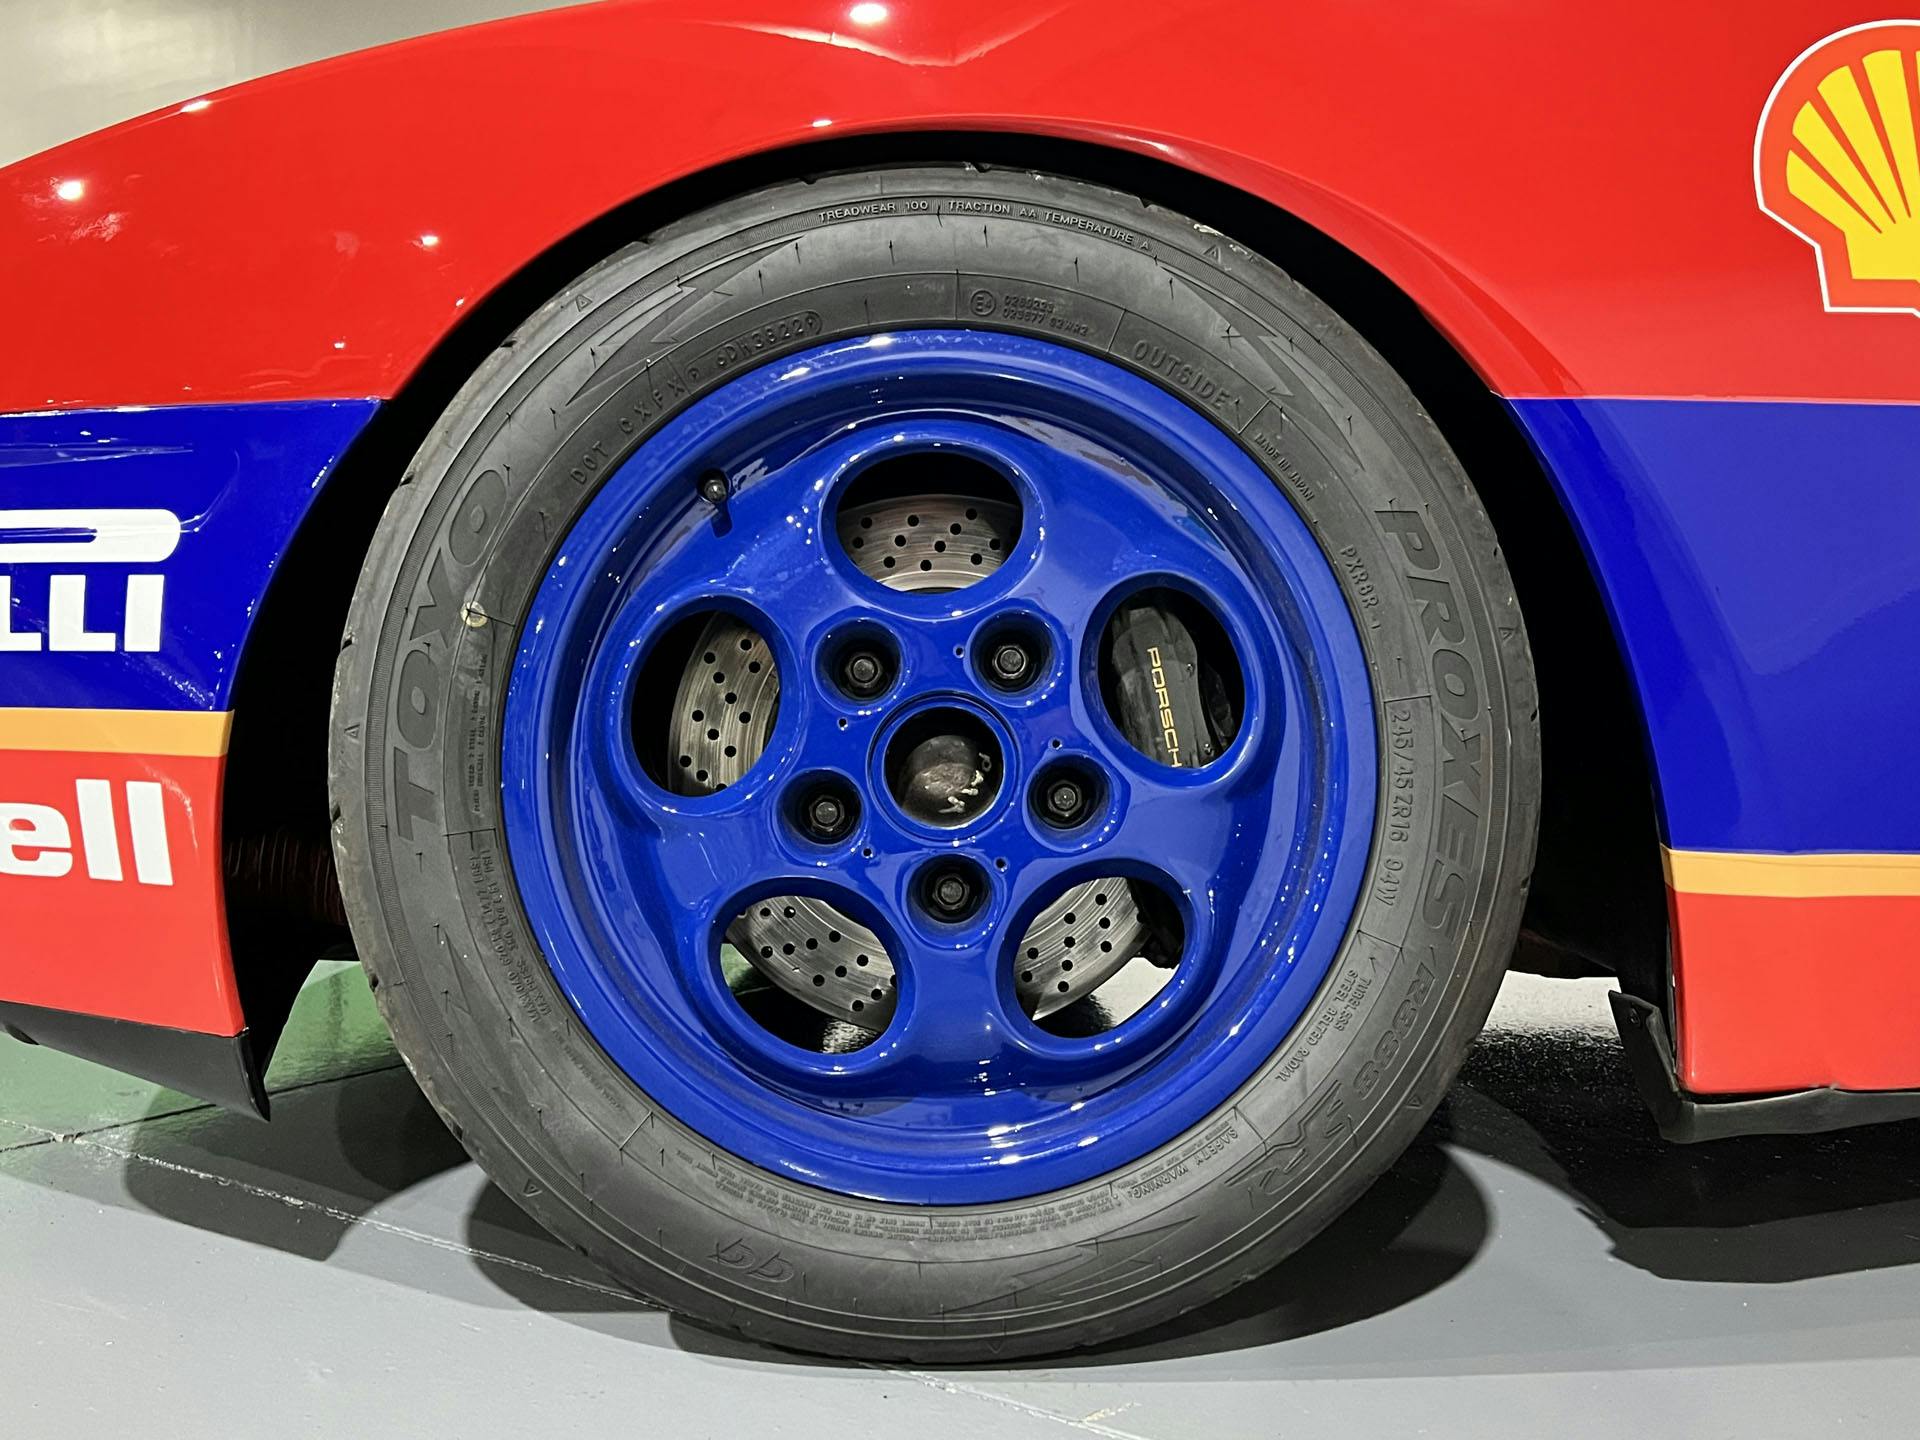 1988 Rothmans Porsche 944 Race Car wheel tire